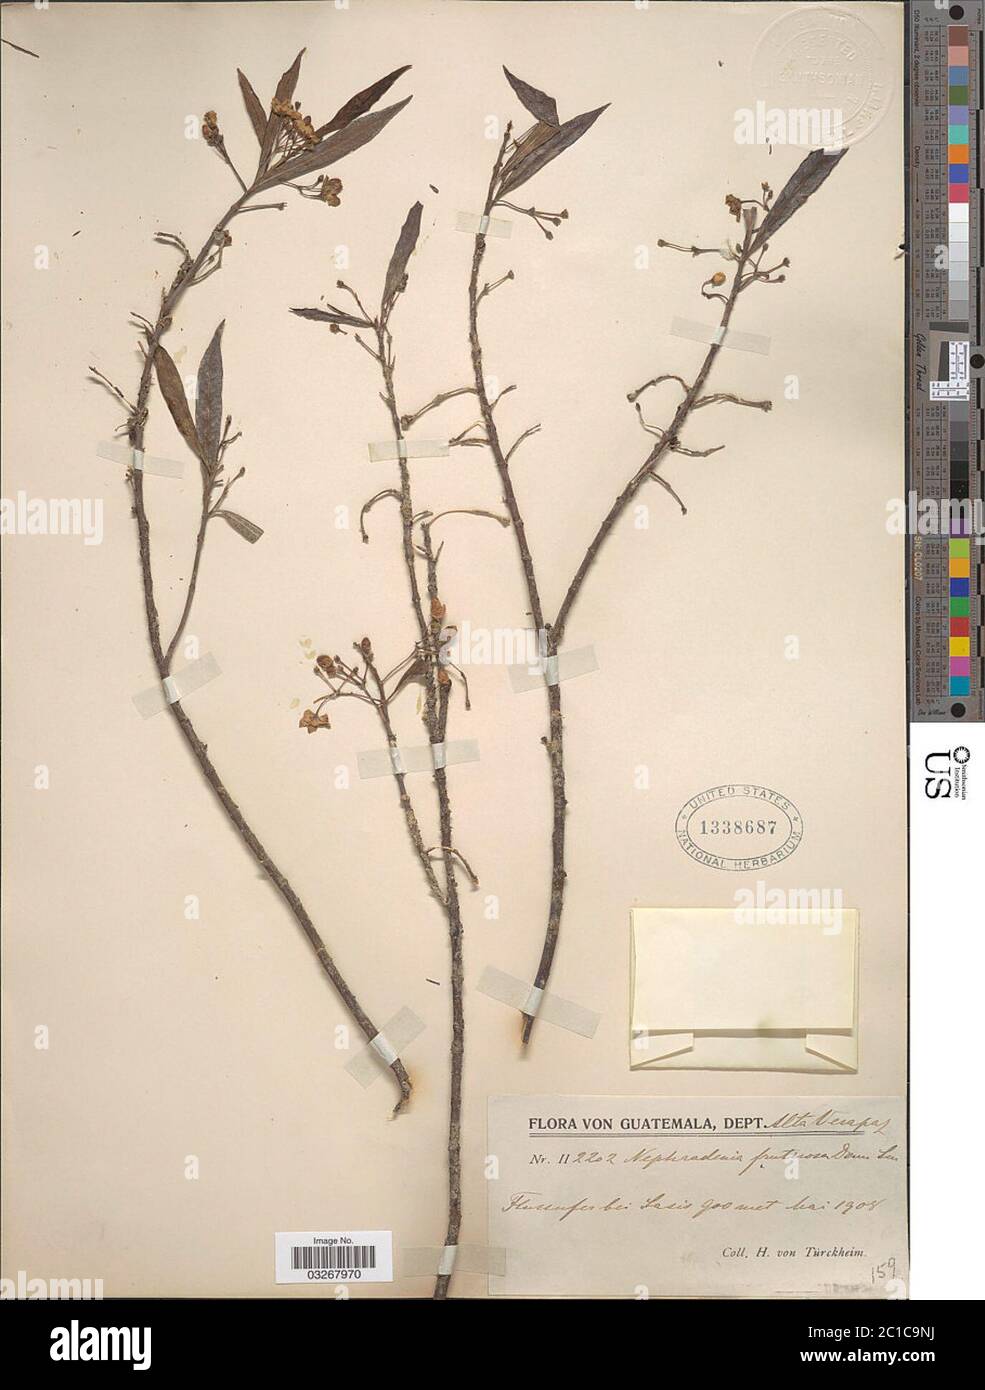 Marsdenia neriifolia Decne Woodson Marsdenia neriifolia Decne Woodson. Stock Photo